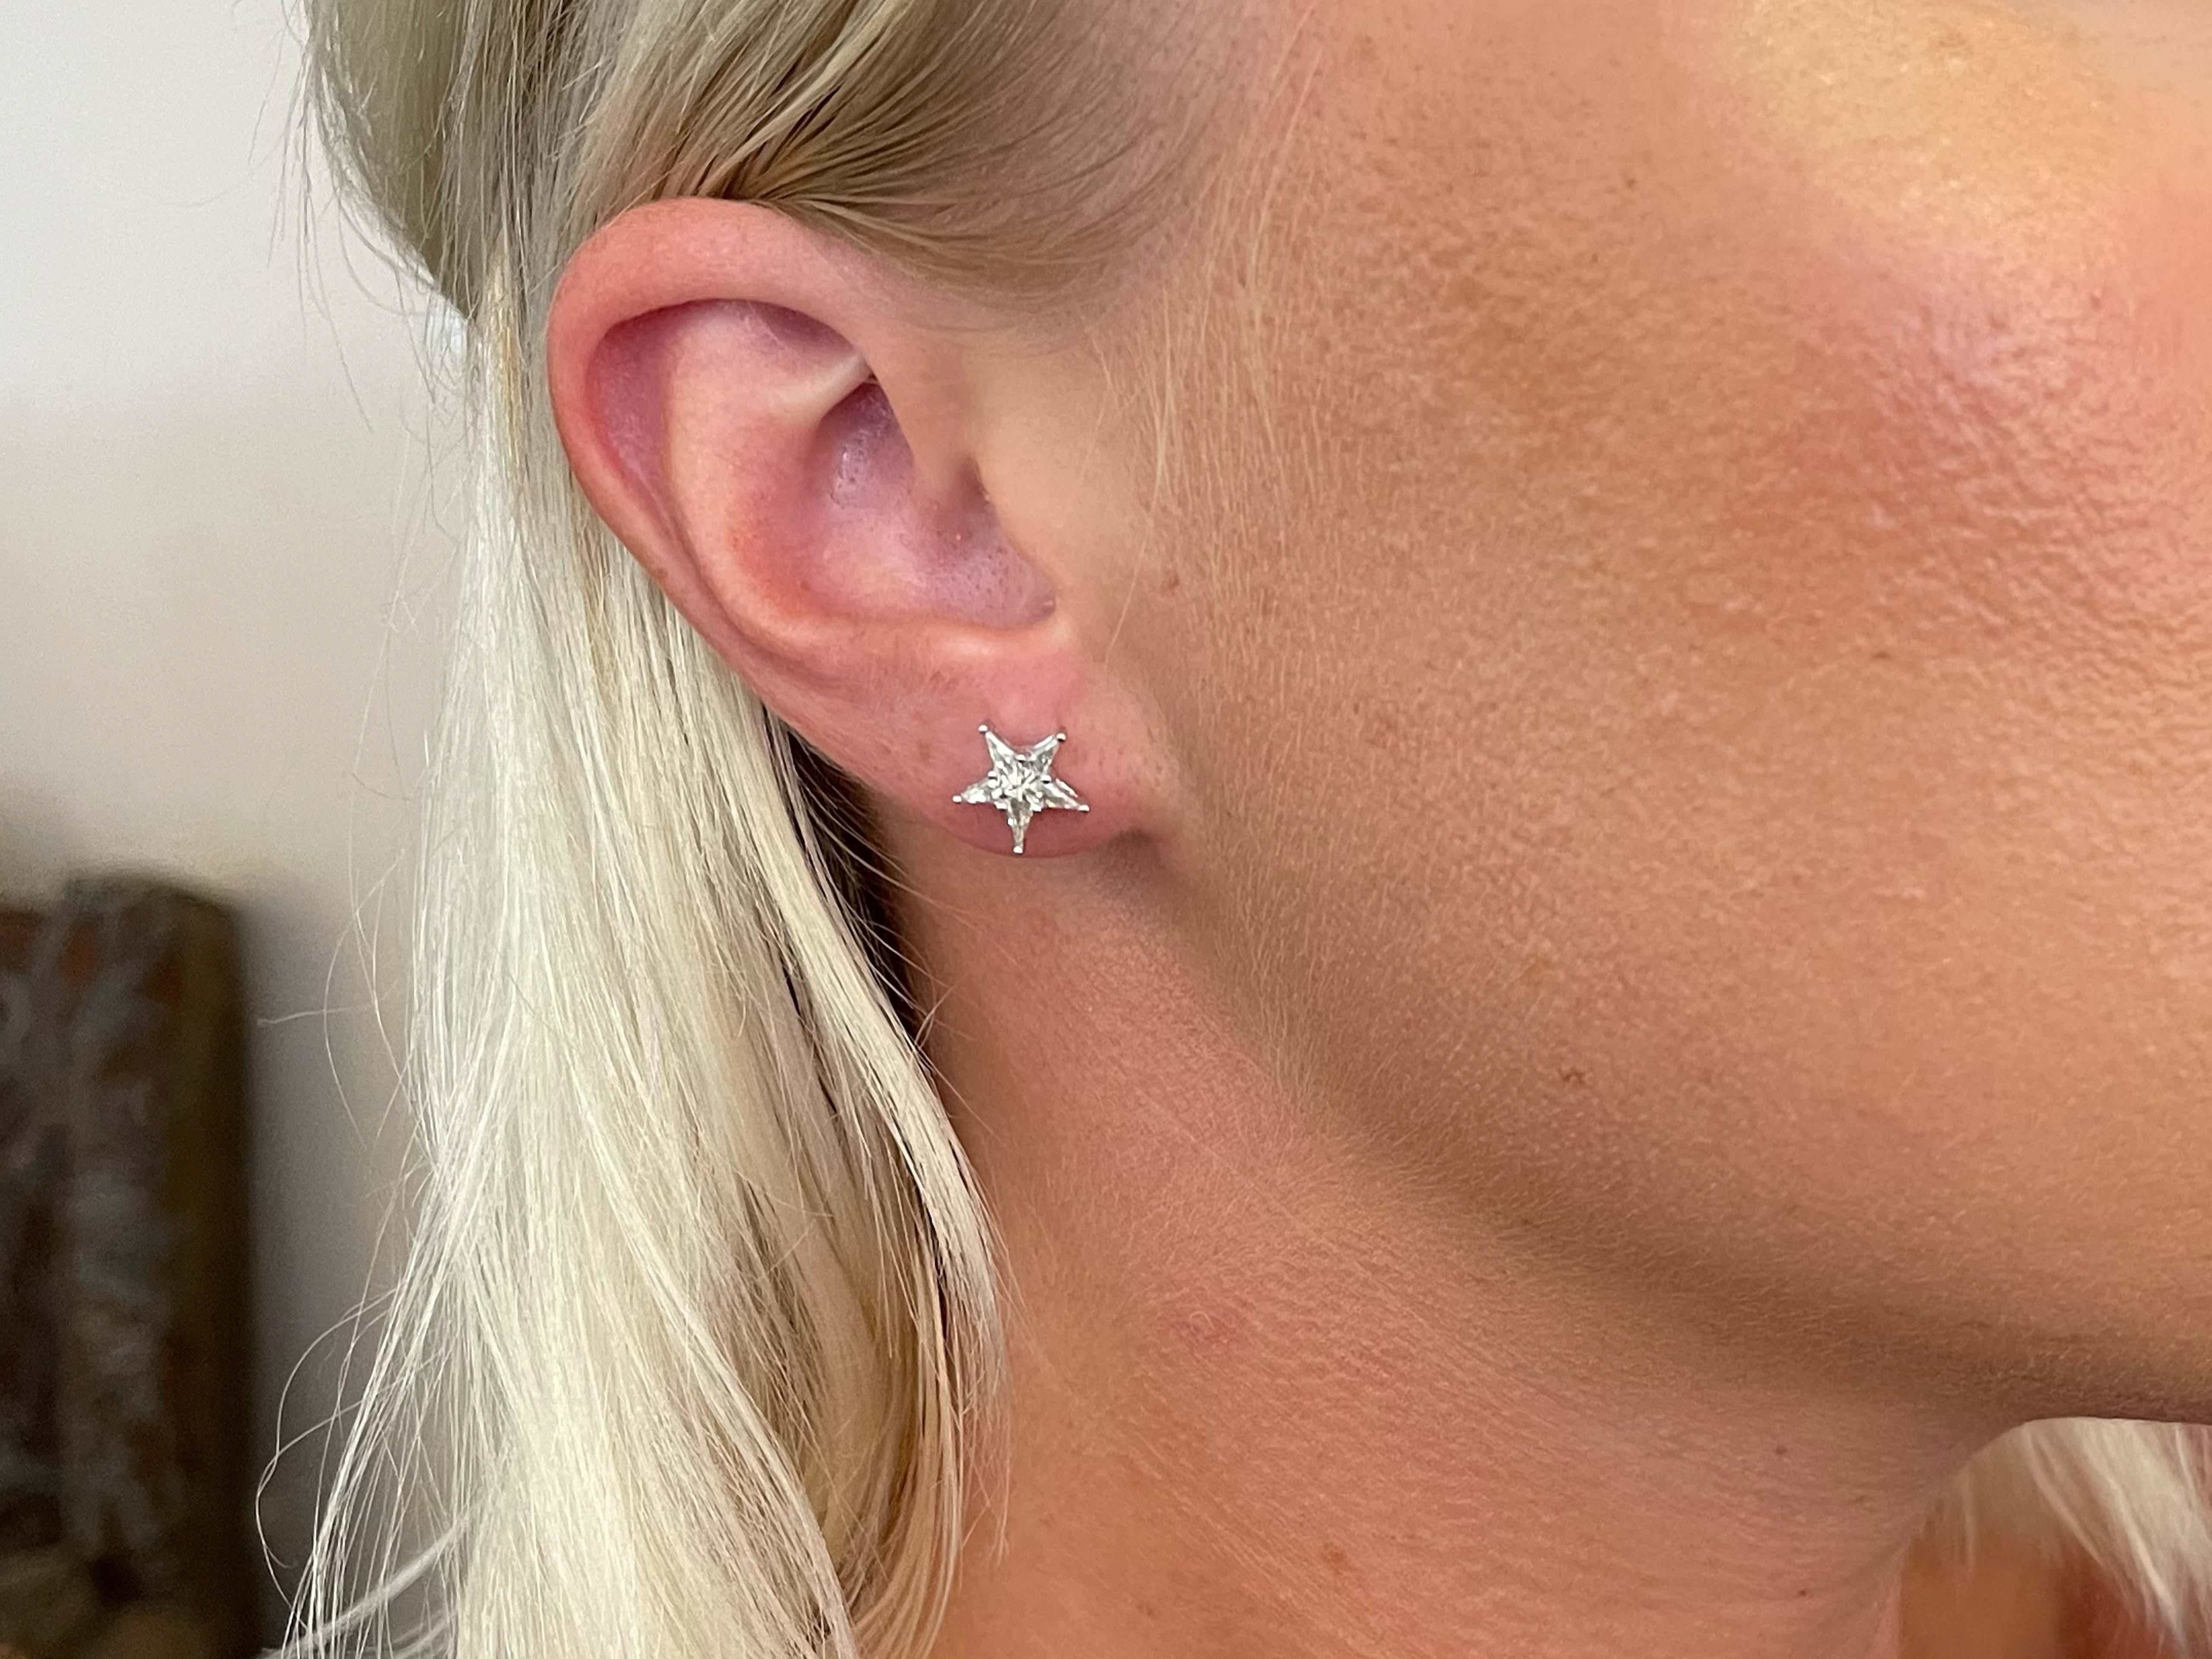 Diese wunderschönen Ohrringe sind mit je einem sternförmig geschliffenen Diamanten mit einem Gesamtkaratgewicht von 0,57 Karat besetzt. Die Diamanten sind G-H, VS und haben ein schönes Funkeln. Die Ohrringe haben einen Durchmesser von 10 mm. Diese